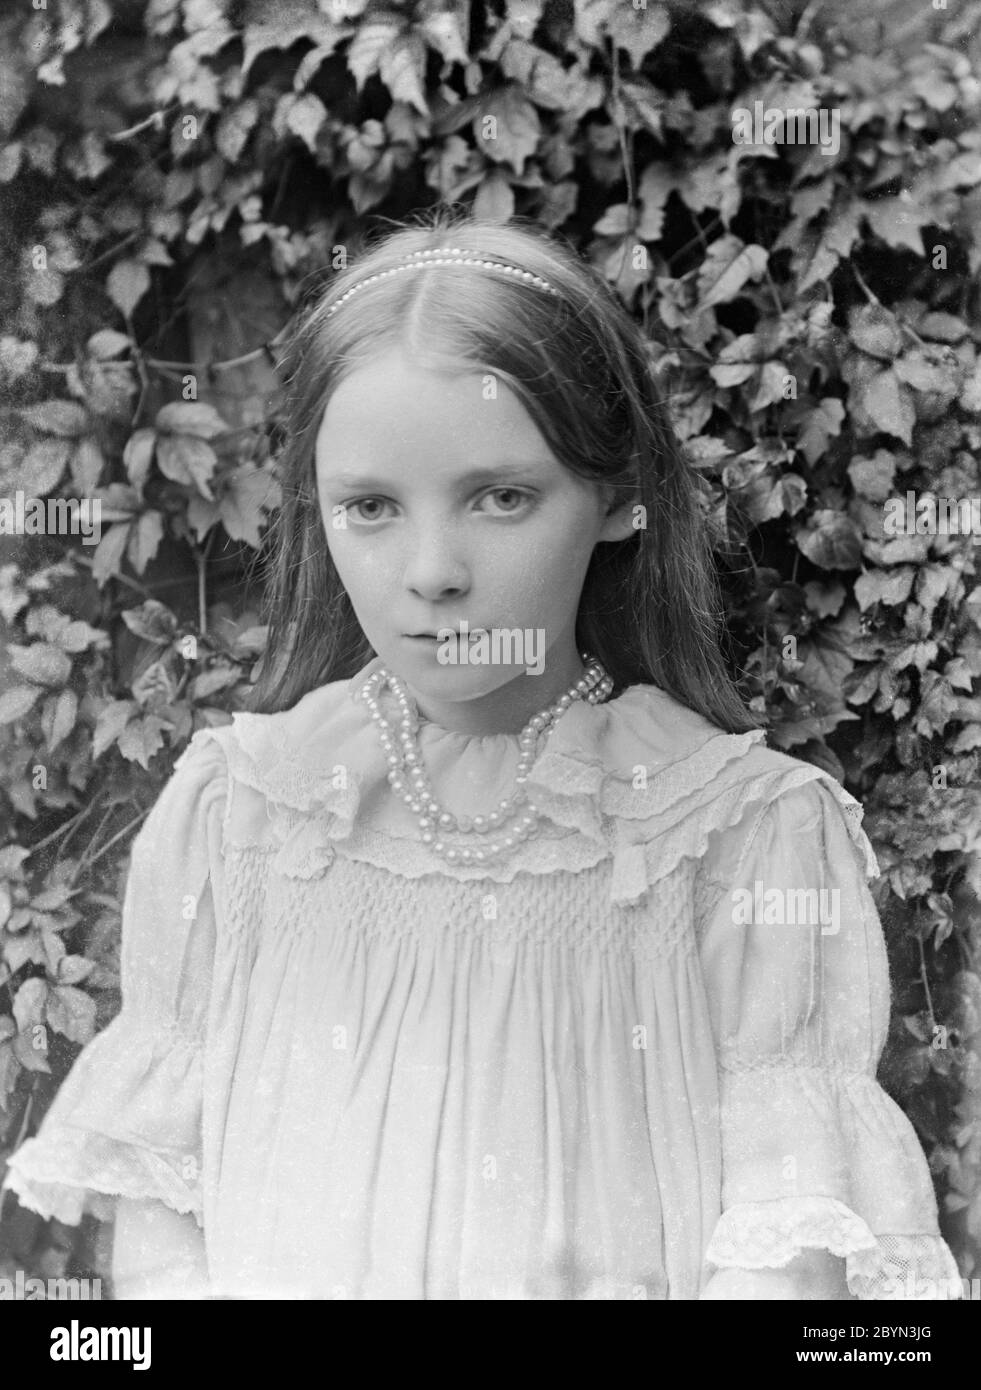 Photographie anglaise vintage noire et blanche d'une jeune fille, de style victorien tardif ou édouardien précoce, montrant la mode et le style de l'époque. Banque D'Images